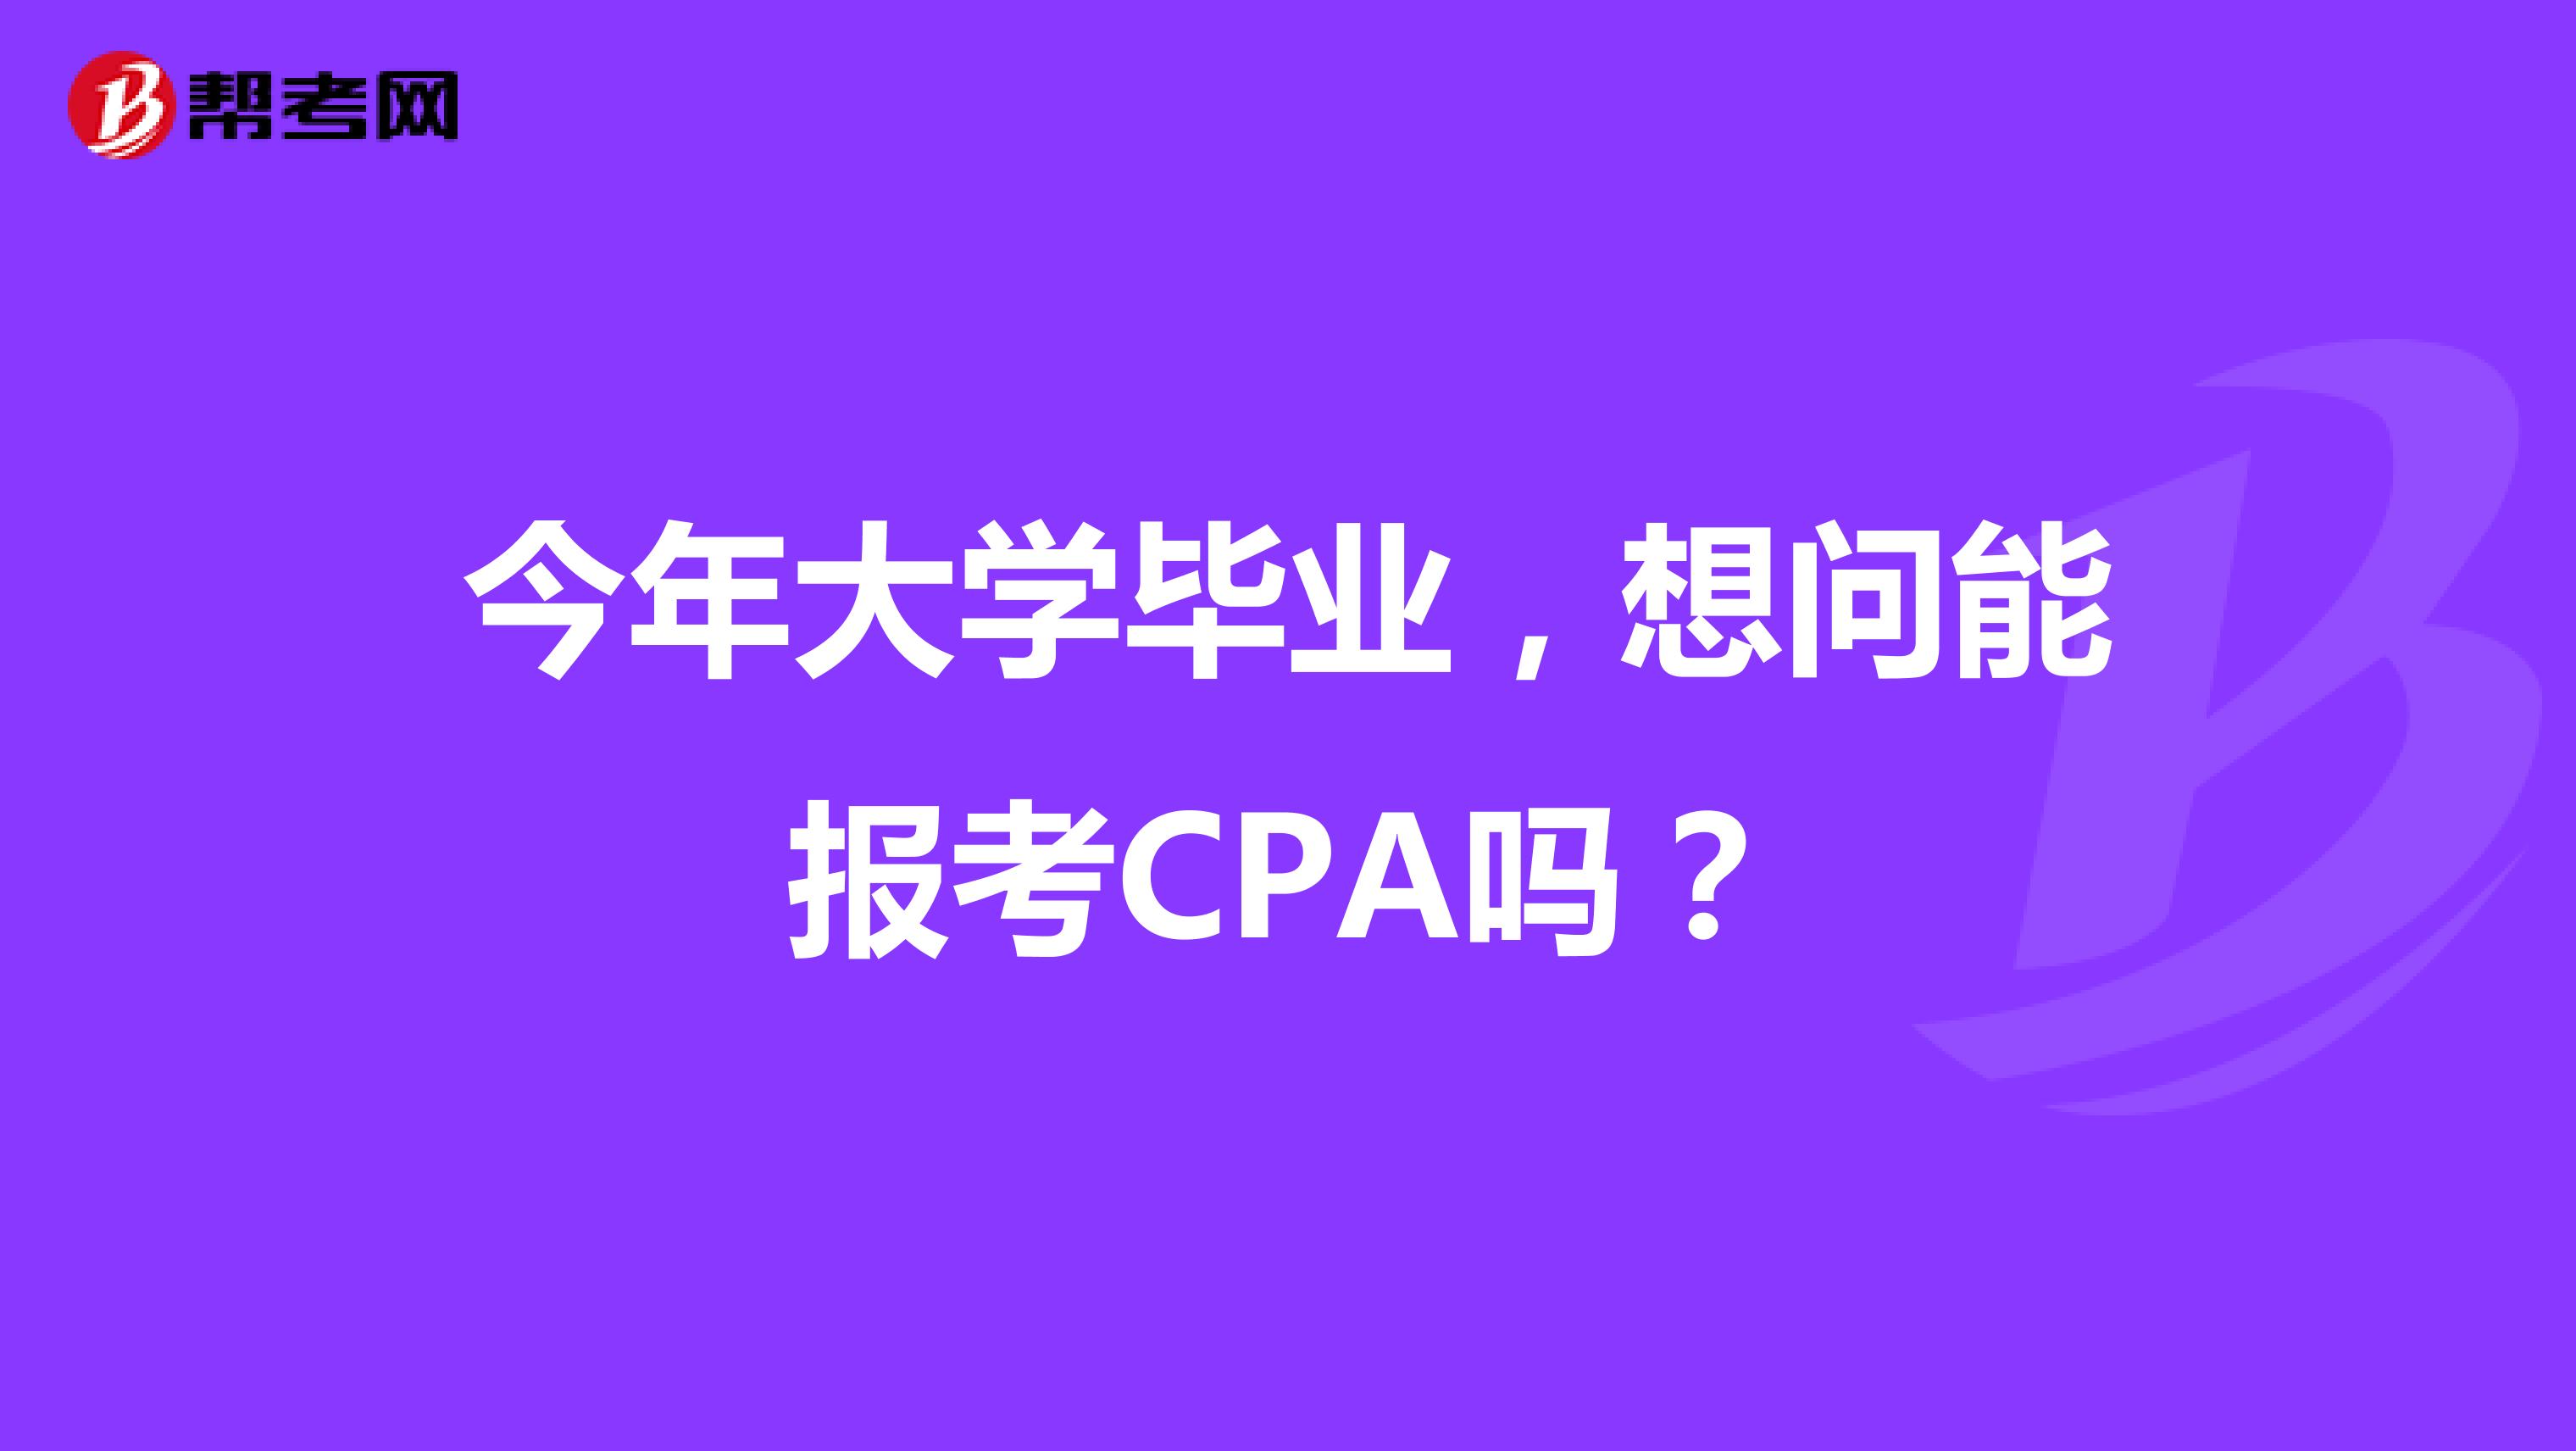 今年大学毕业，想问能报考CPA吗？